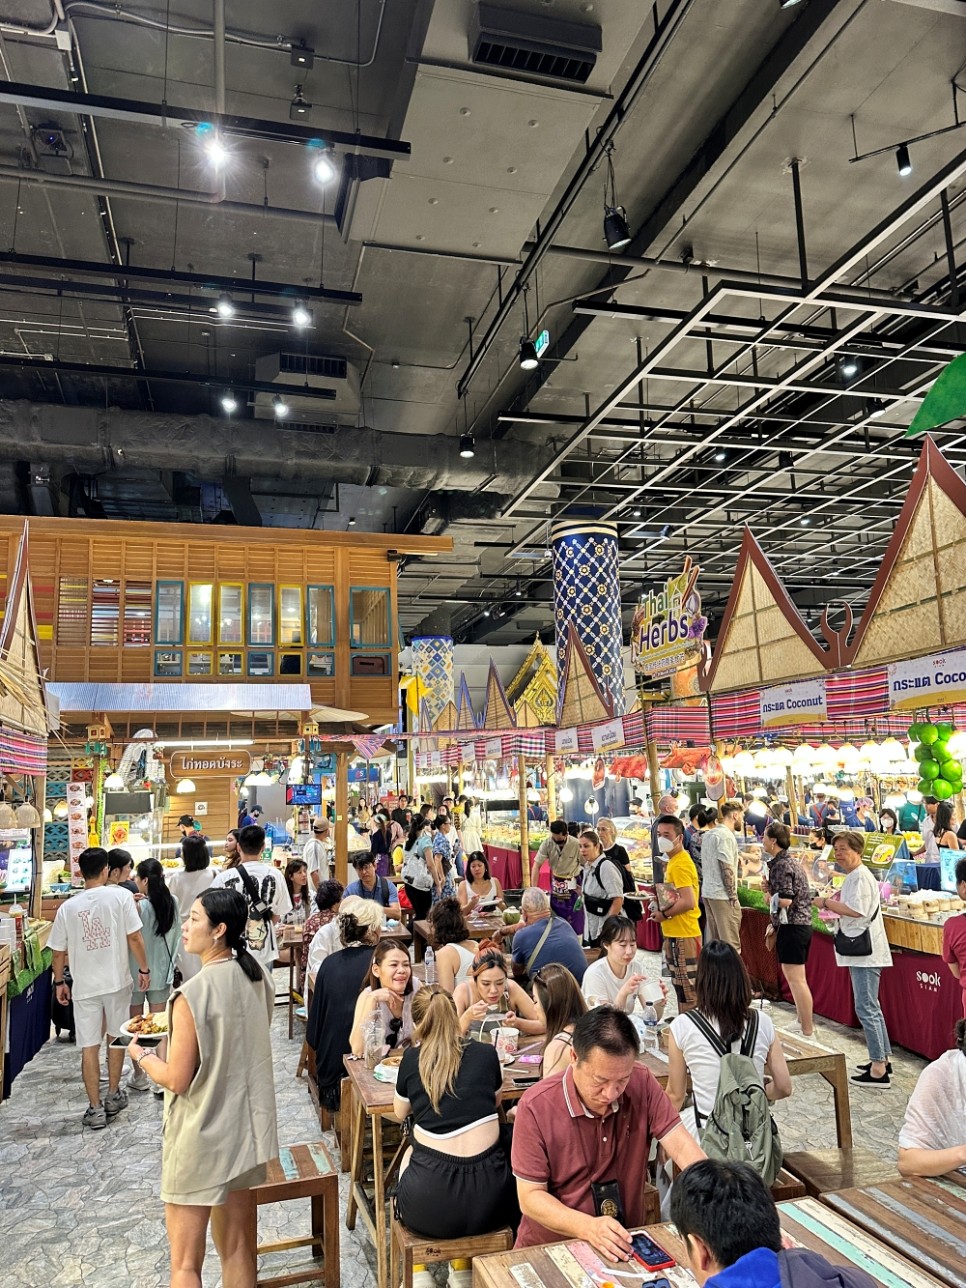 태국 방콕 쇼핑리스트 추천 빅씨마트 아이콘시암 쇼핑몰 태국기념품 비교